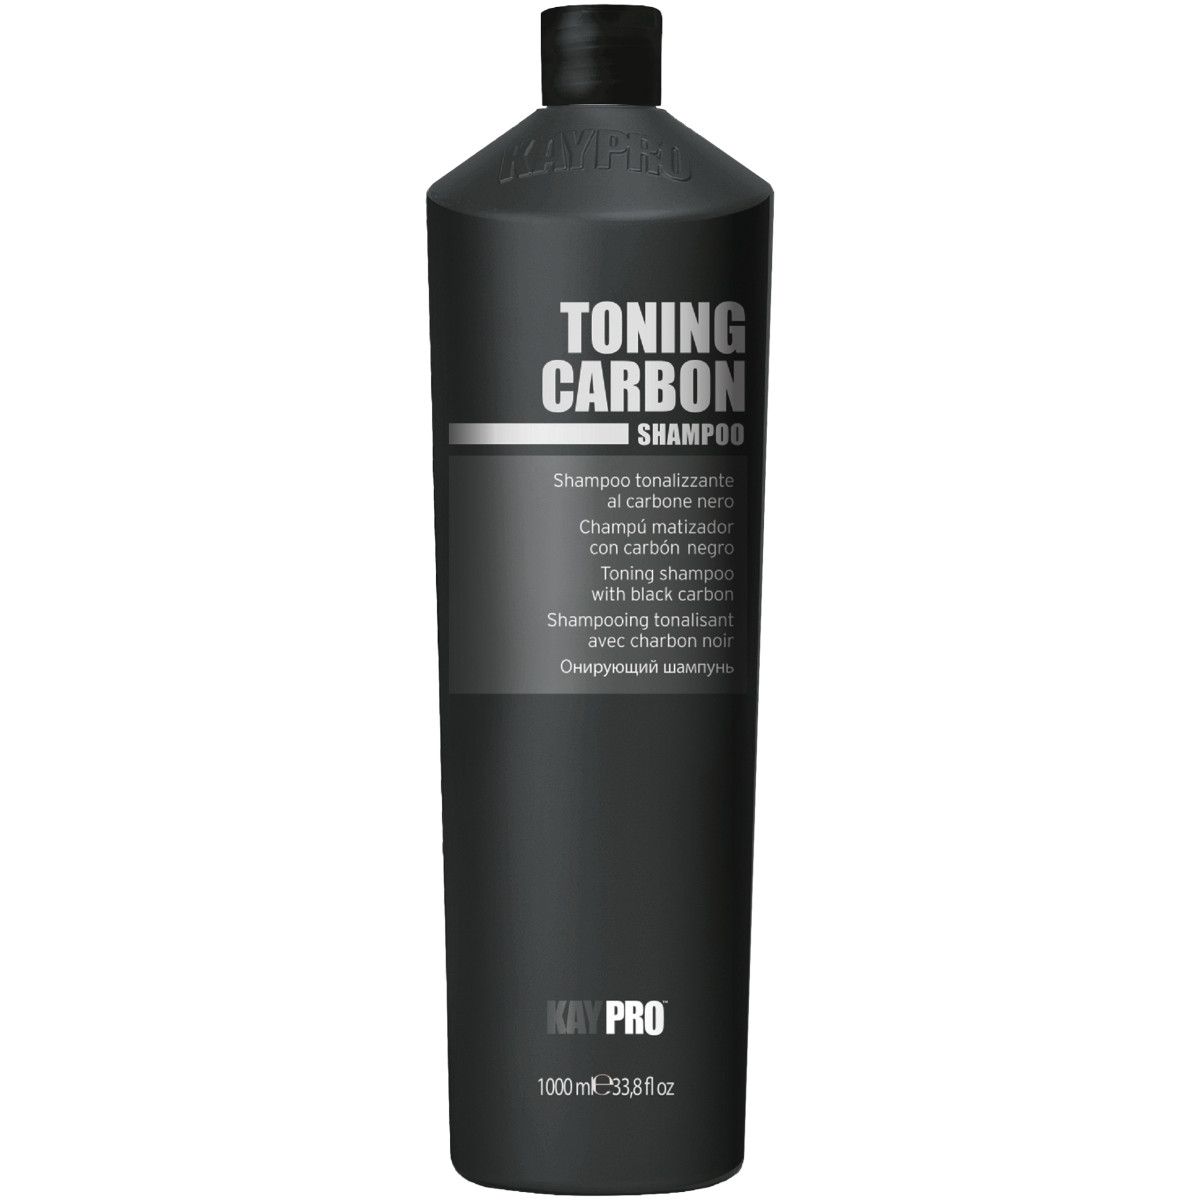 KayPro Toning Carbon - szampon tonujący do włosów, 1000ml